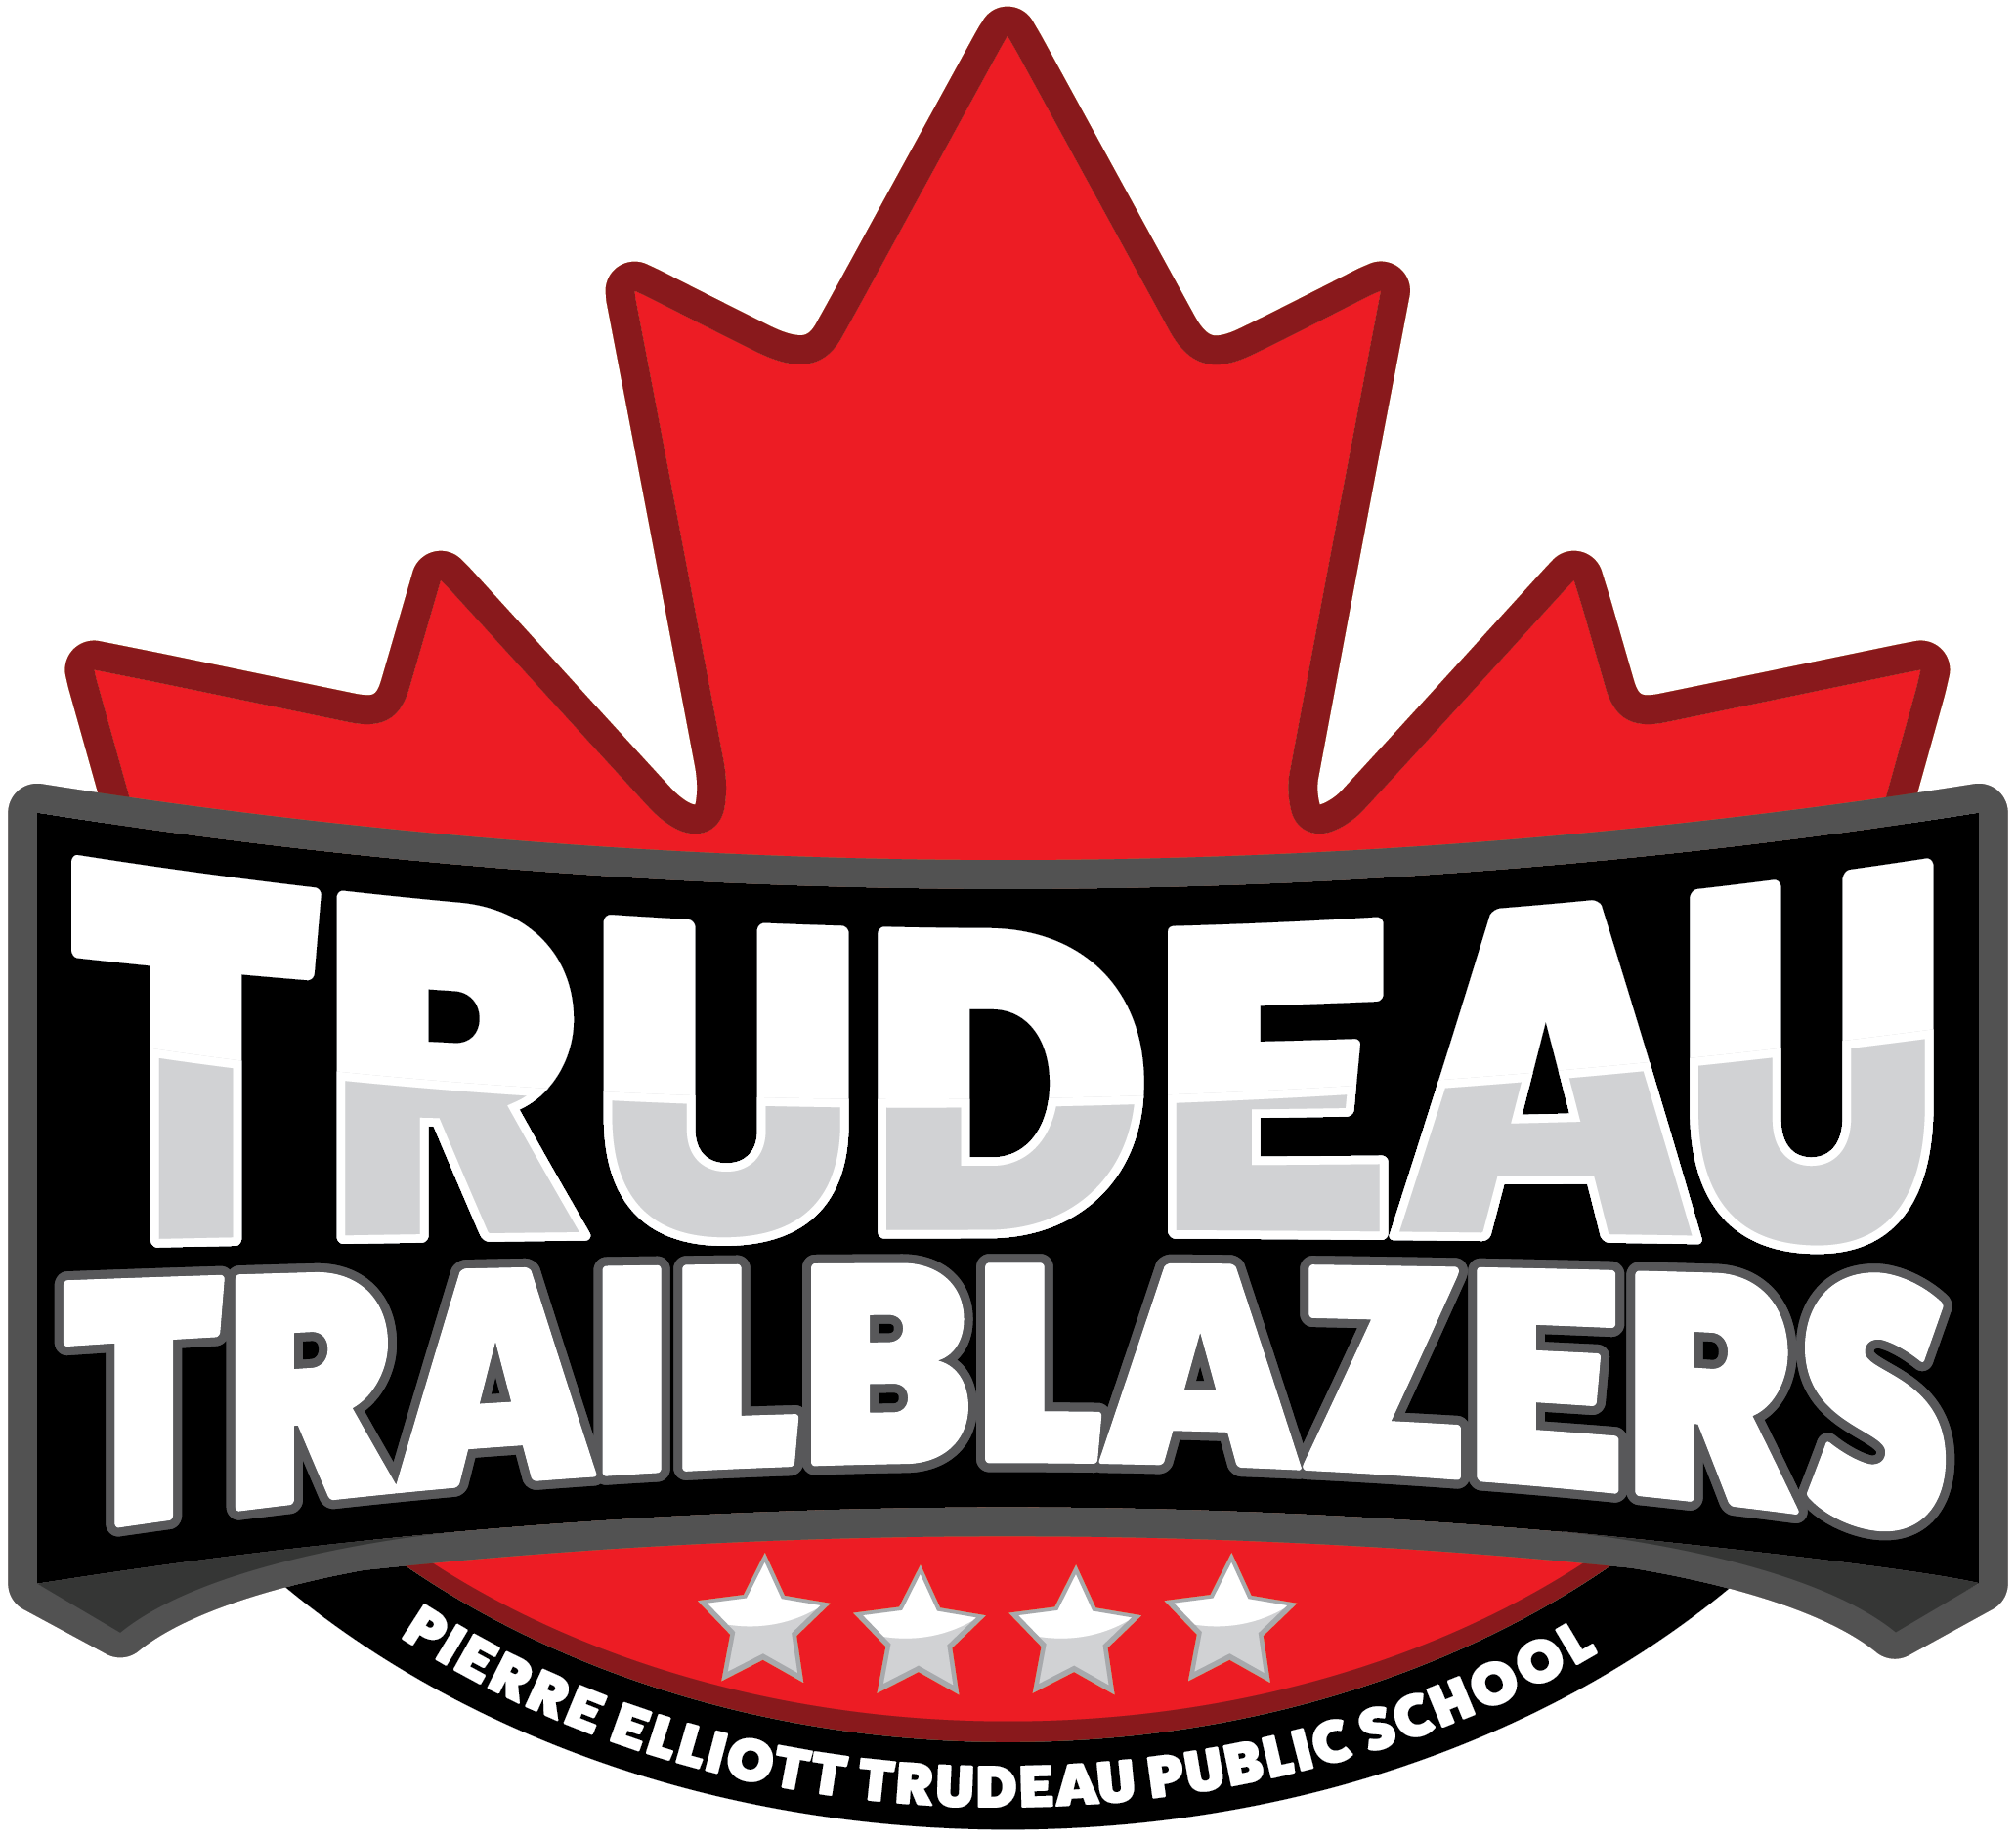 Pierre Elliott Trudeau Public School logo